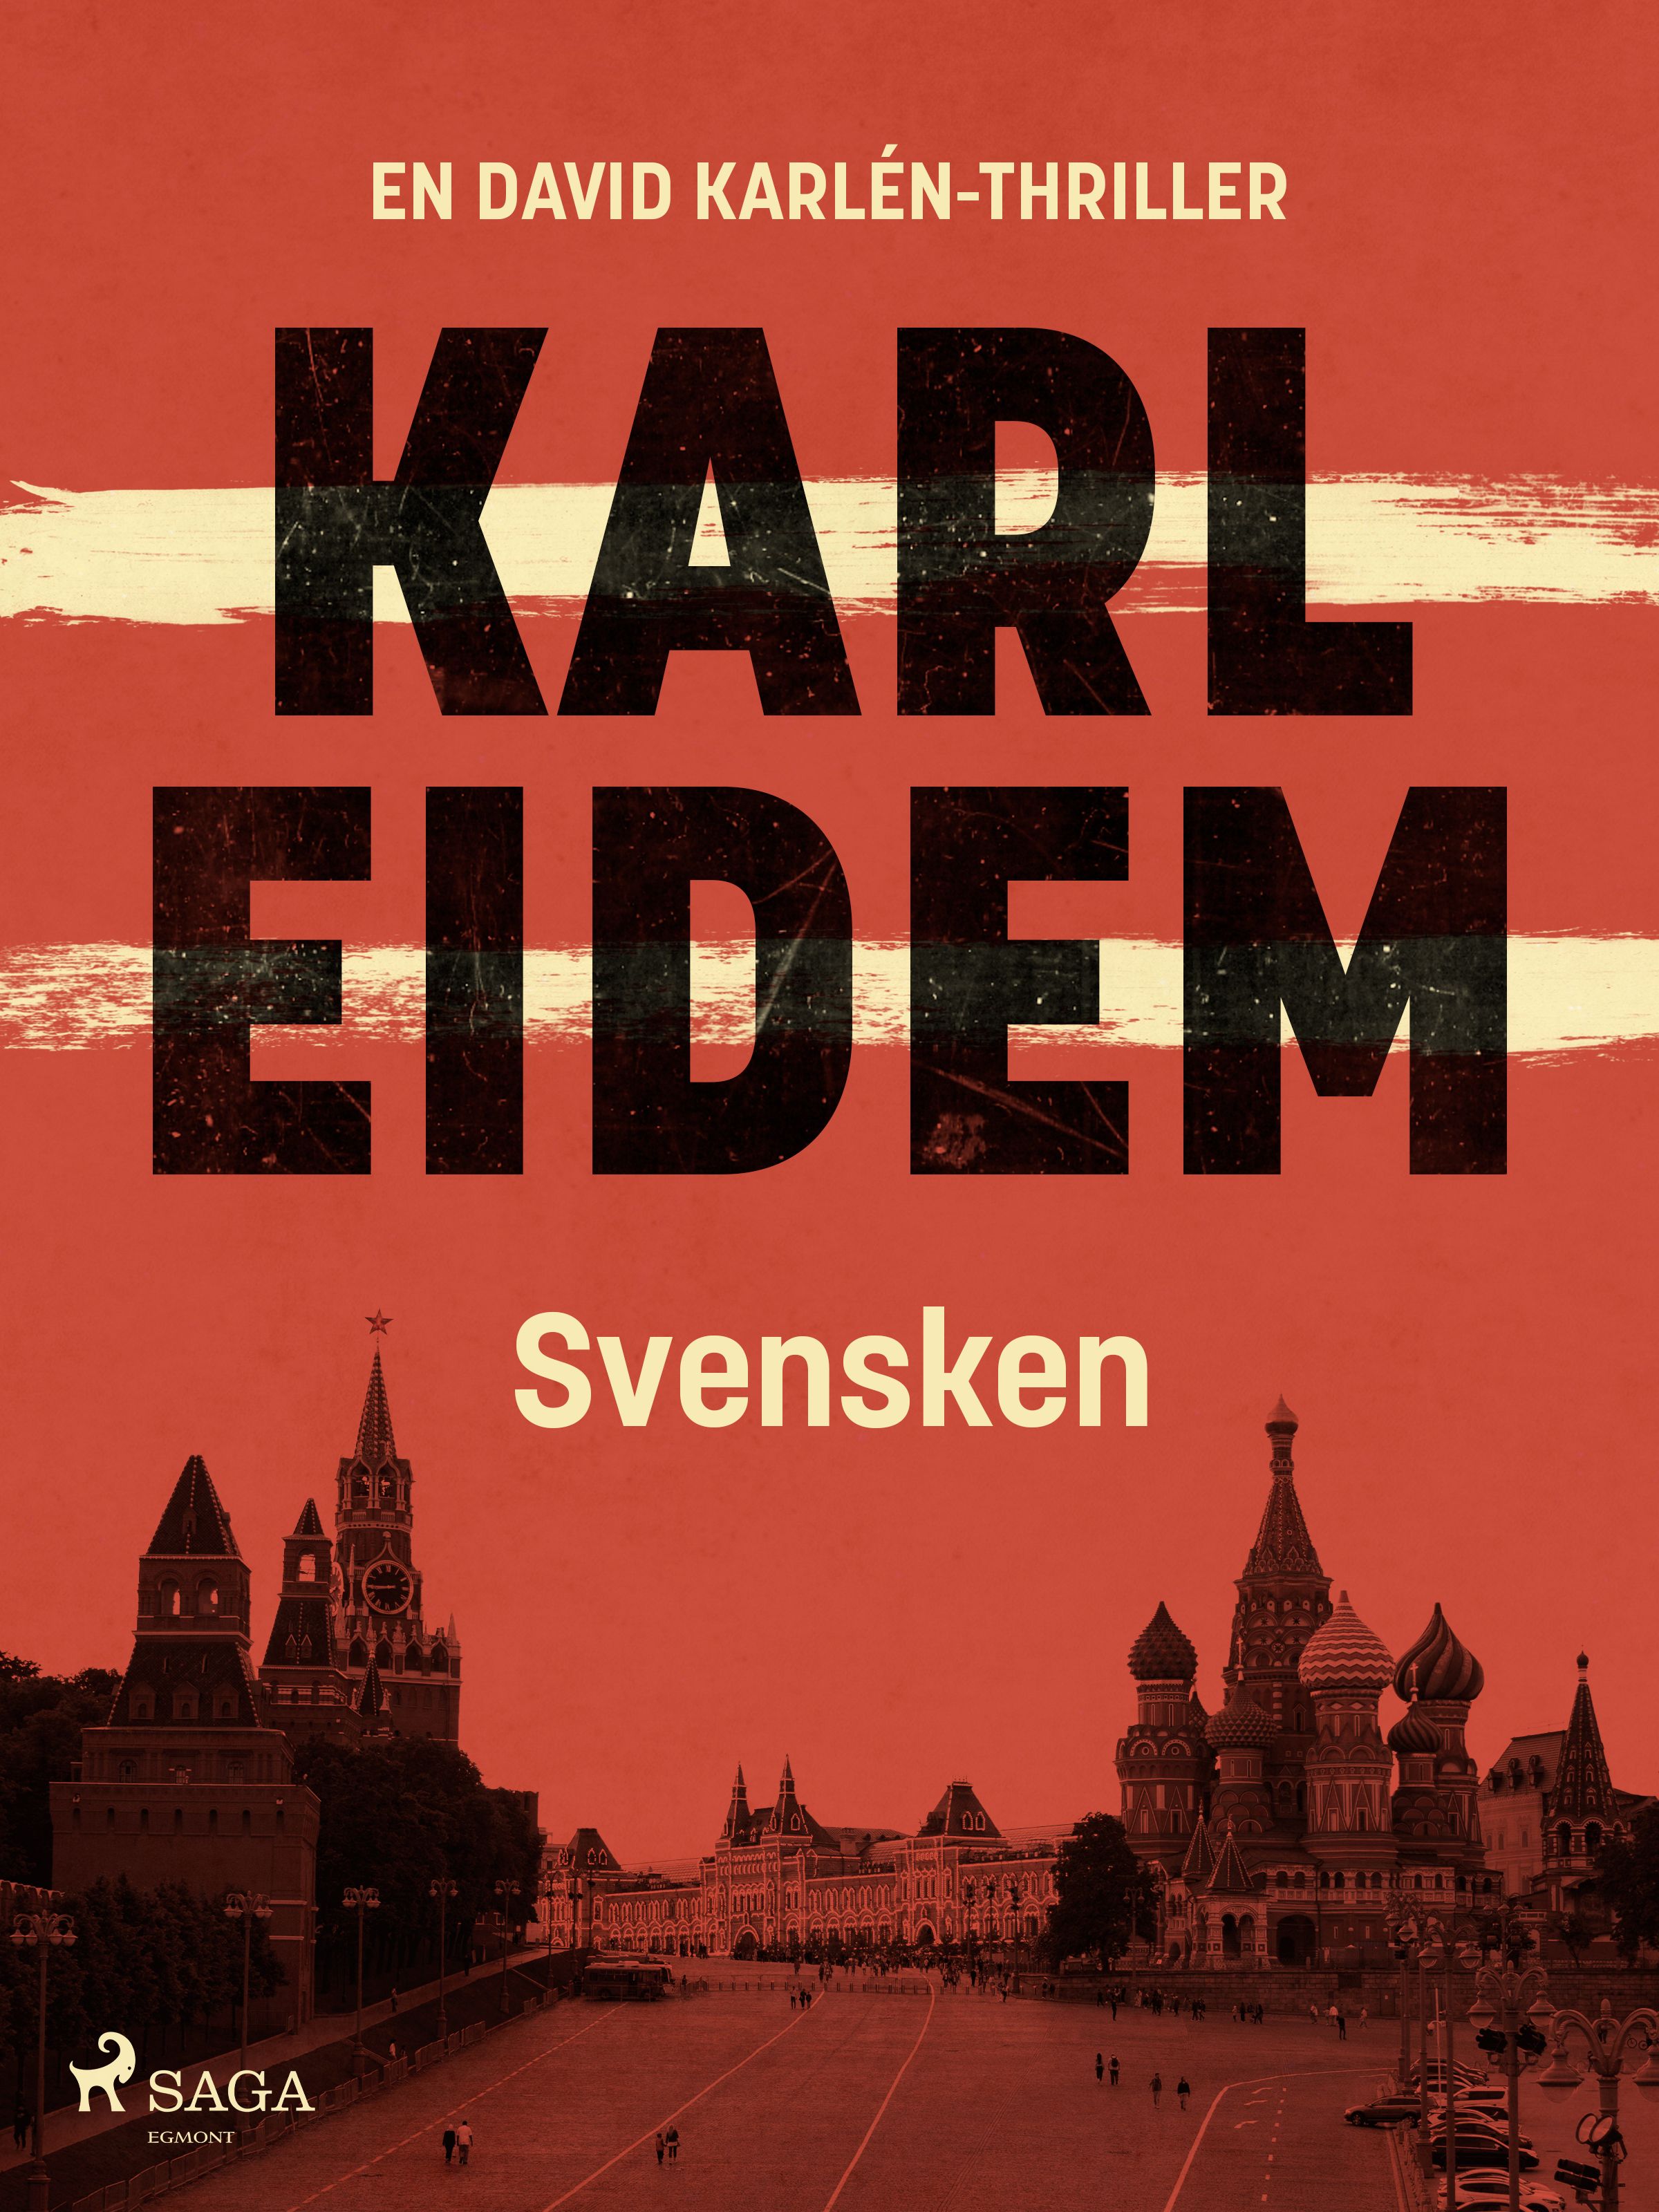 Svensken, e-bok av Karl Eidem